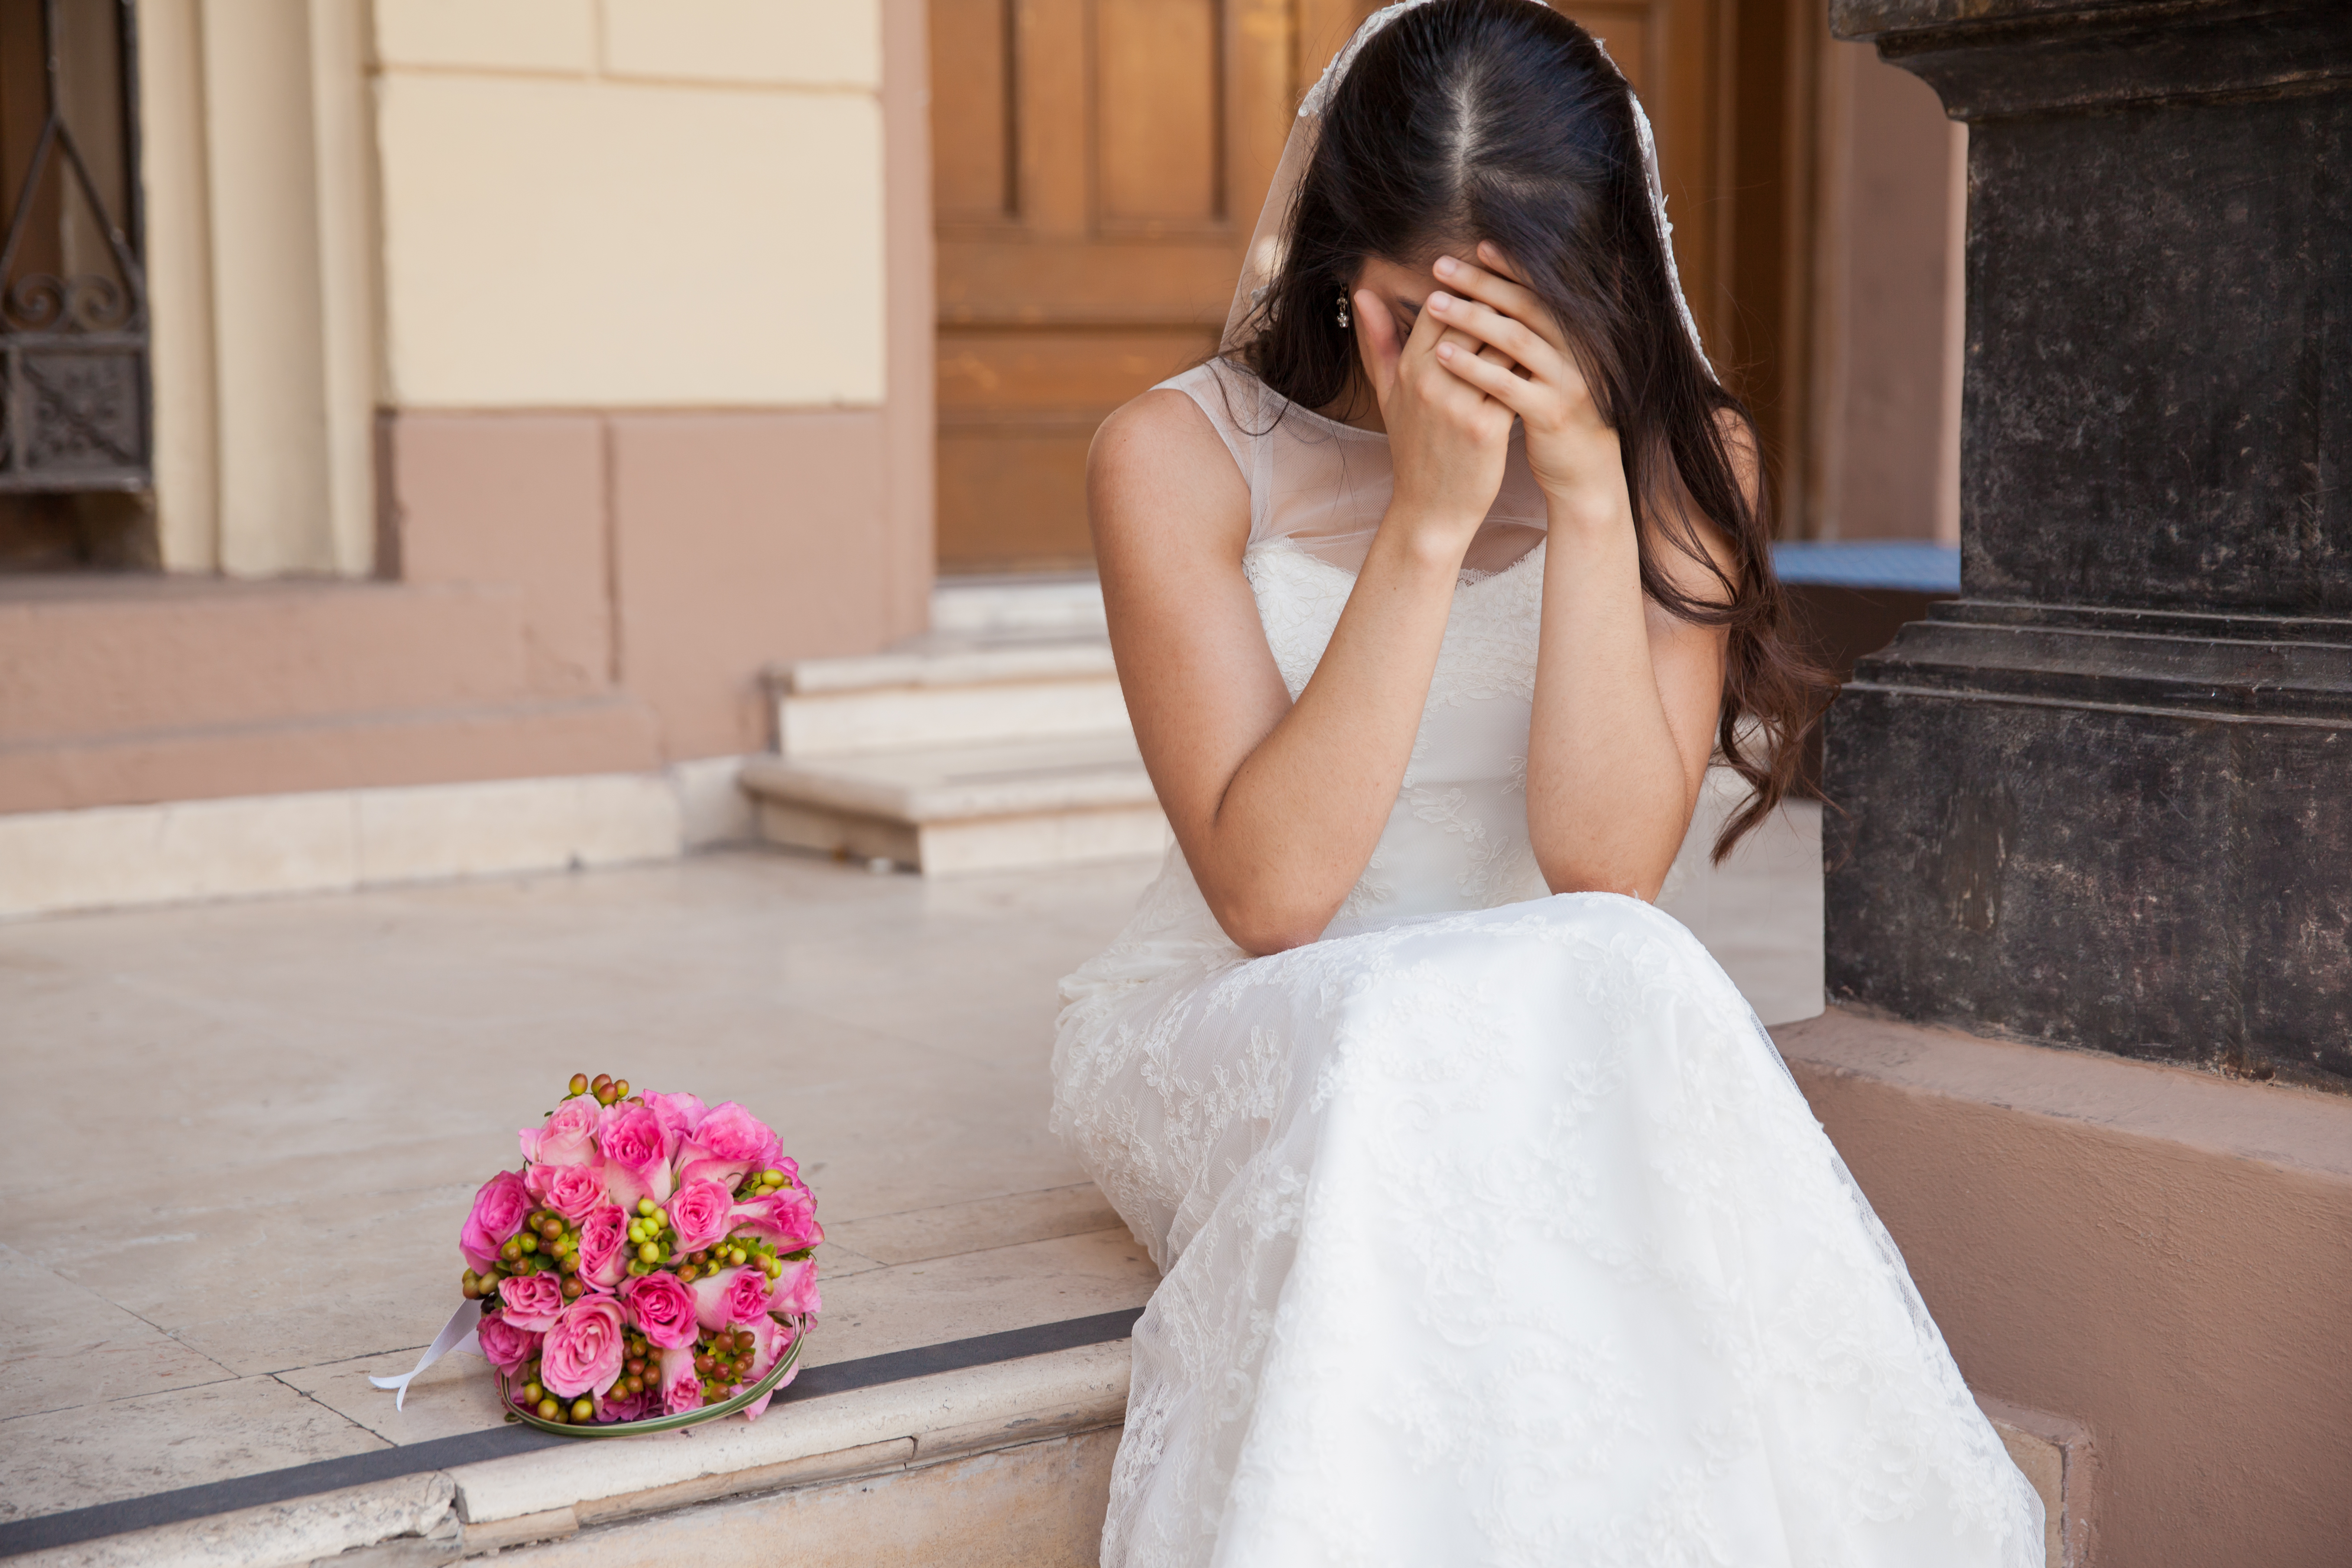 Una novia desesperada llorando el día de su boda. | Foto: Shutterstock